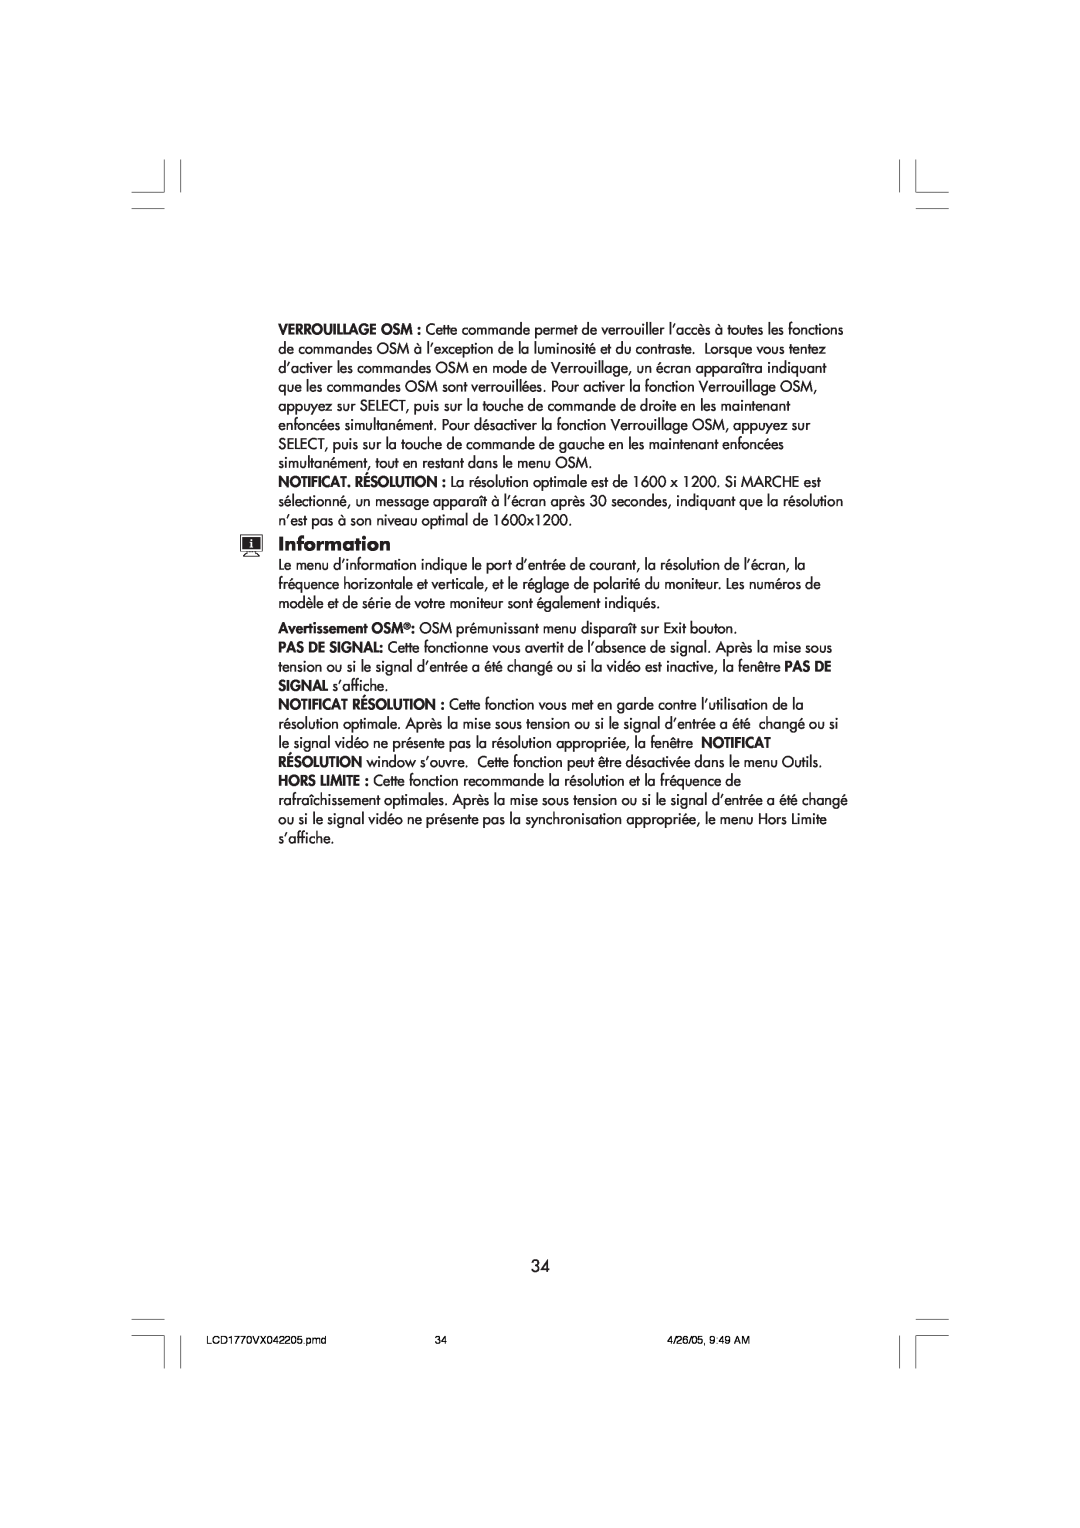 NEC LCD1770VX user manual Information, Avertissement OSM OSM prémunissant menu disparaît sur Exit bouton 